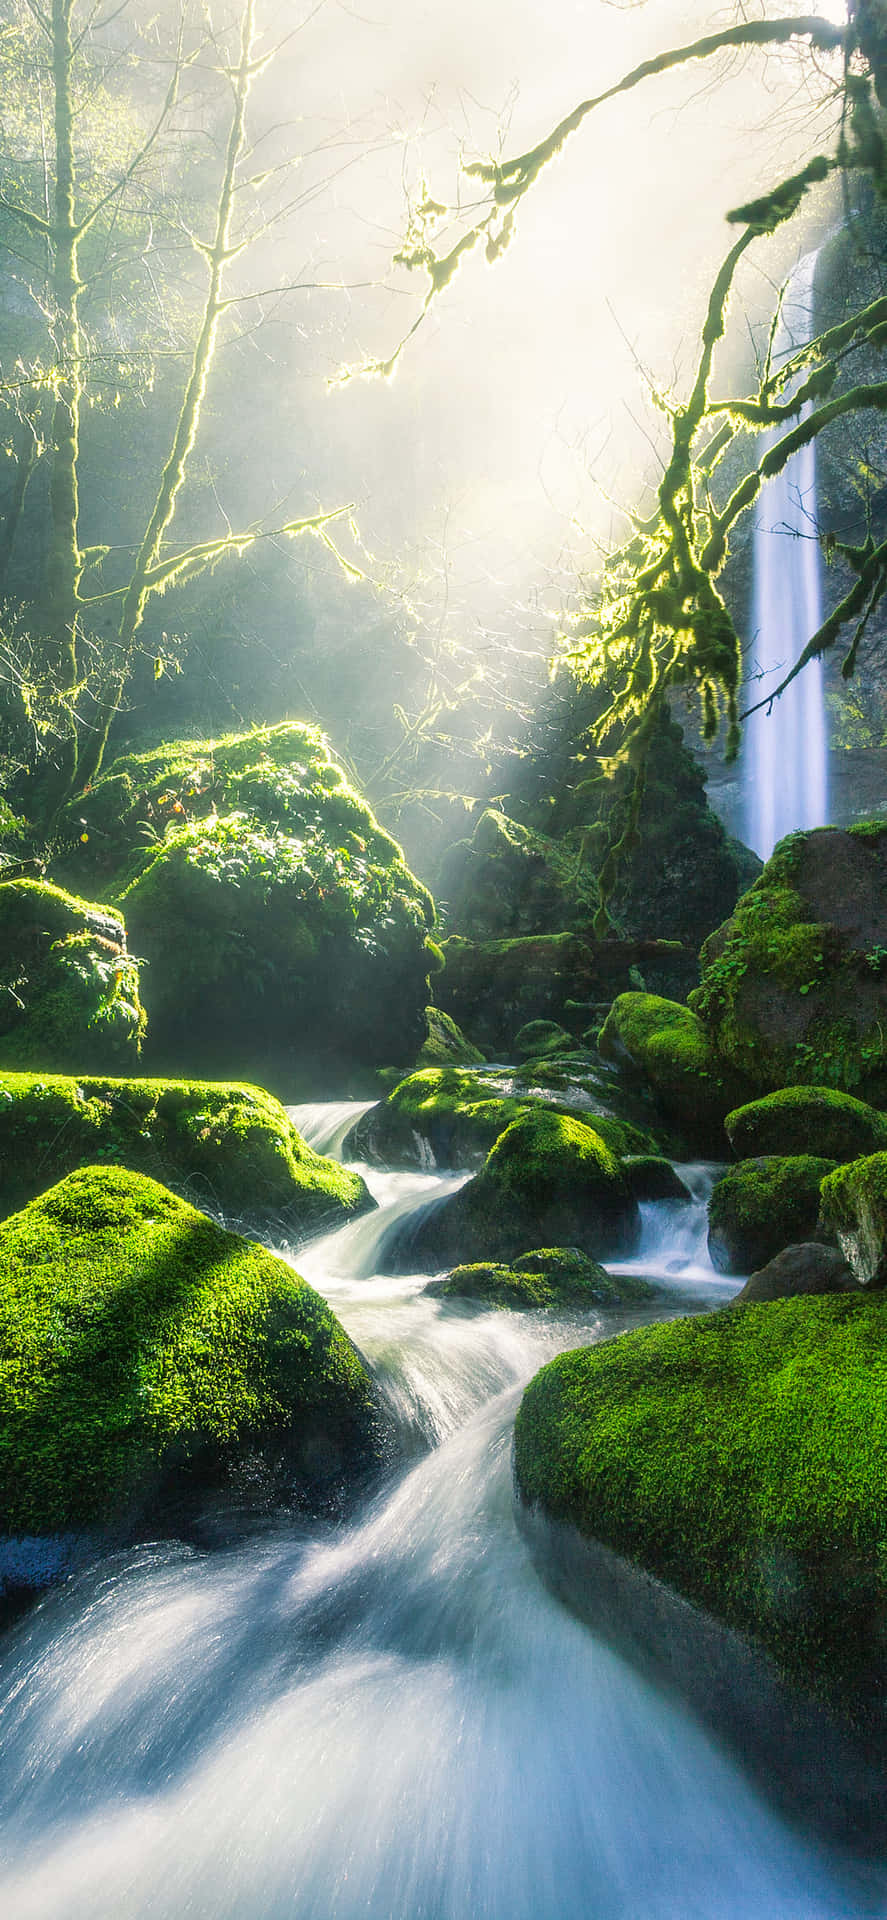 Holensie Sich Die Natur Näher Mit Ihrem Green Nature Iphone Wallpaper